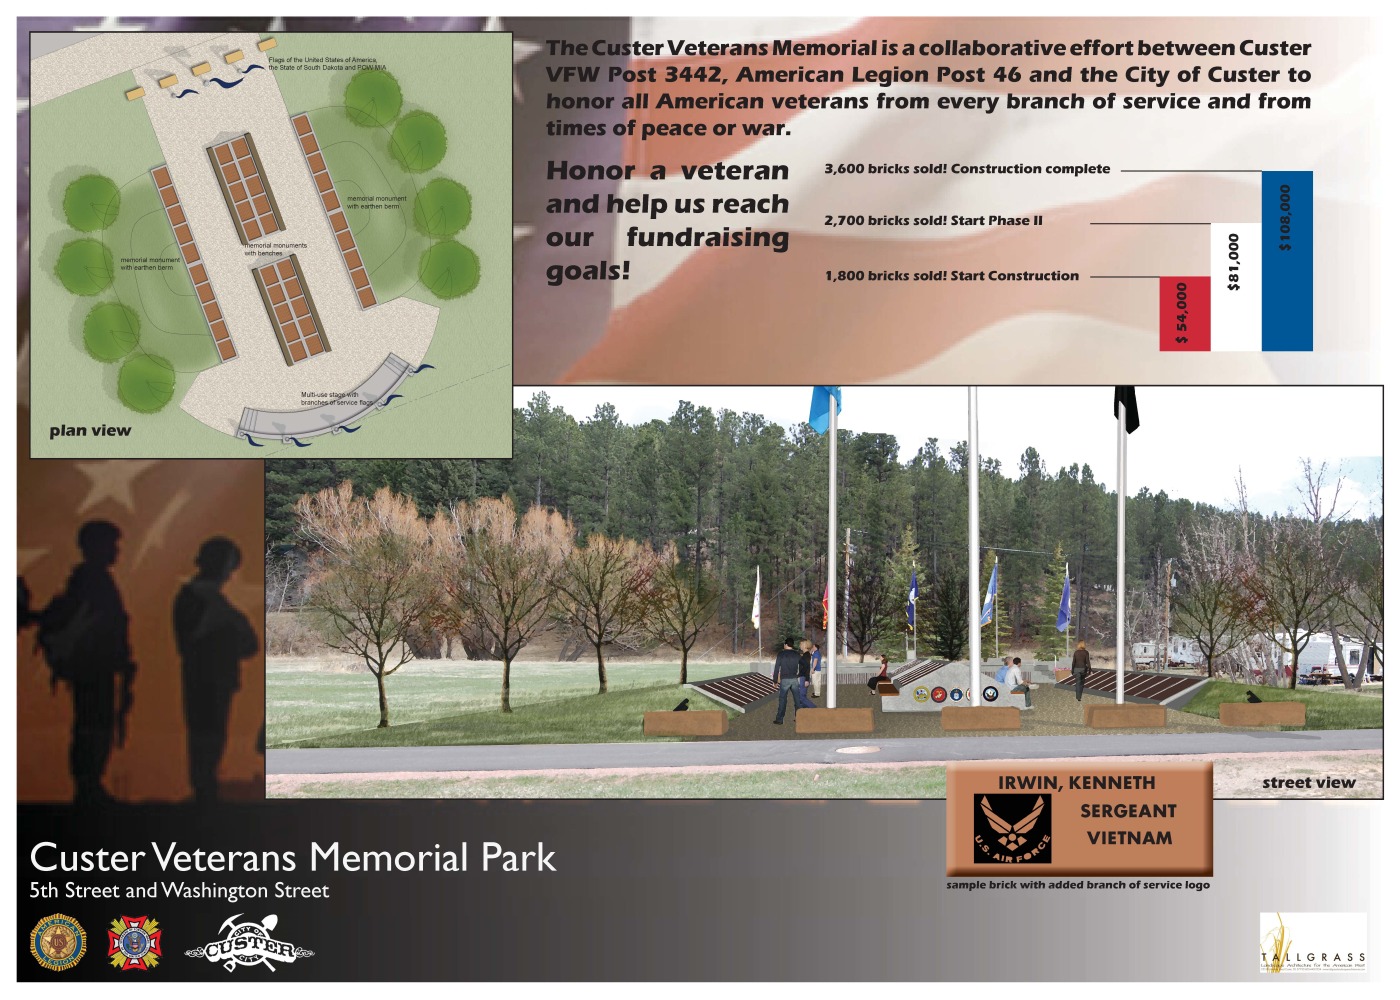 Custer Veteran’s Memorial Park